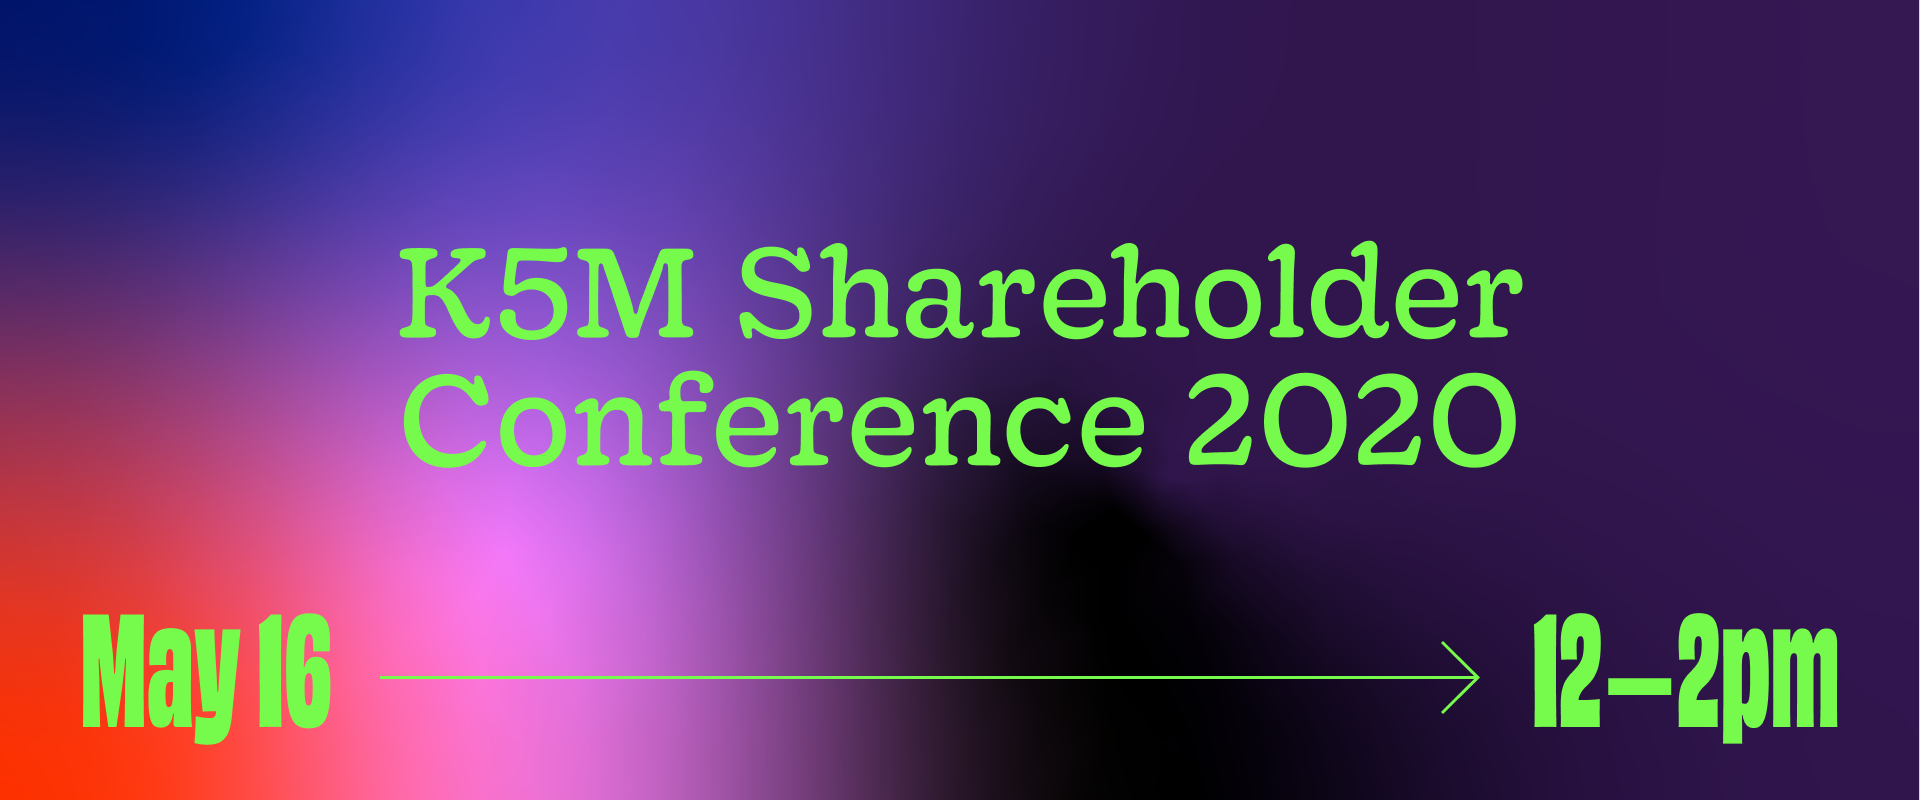 2020 Shareholder Conference